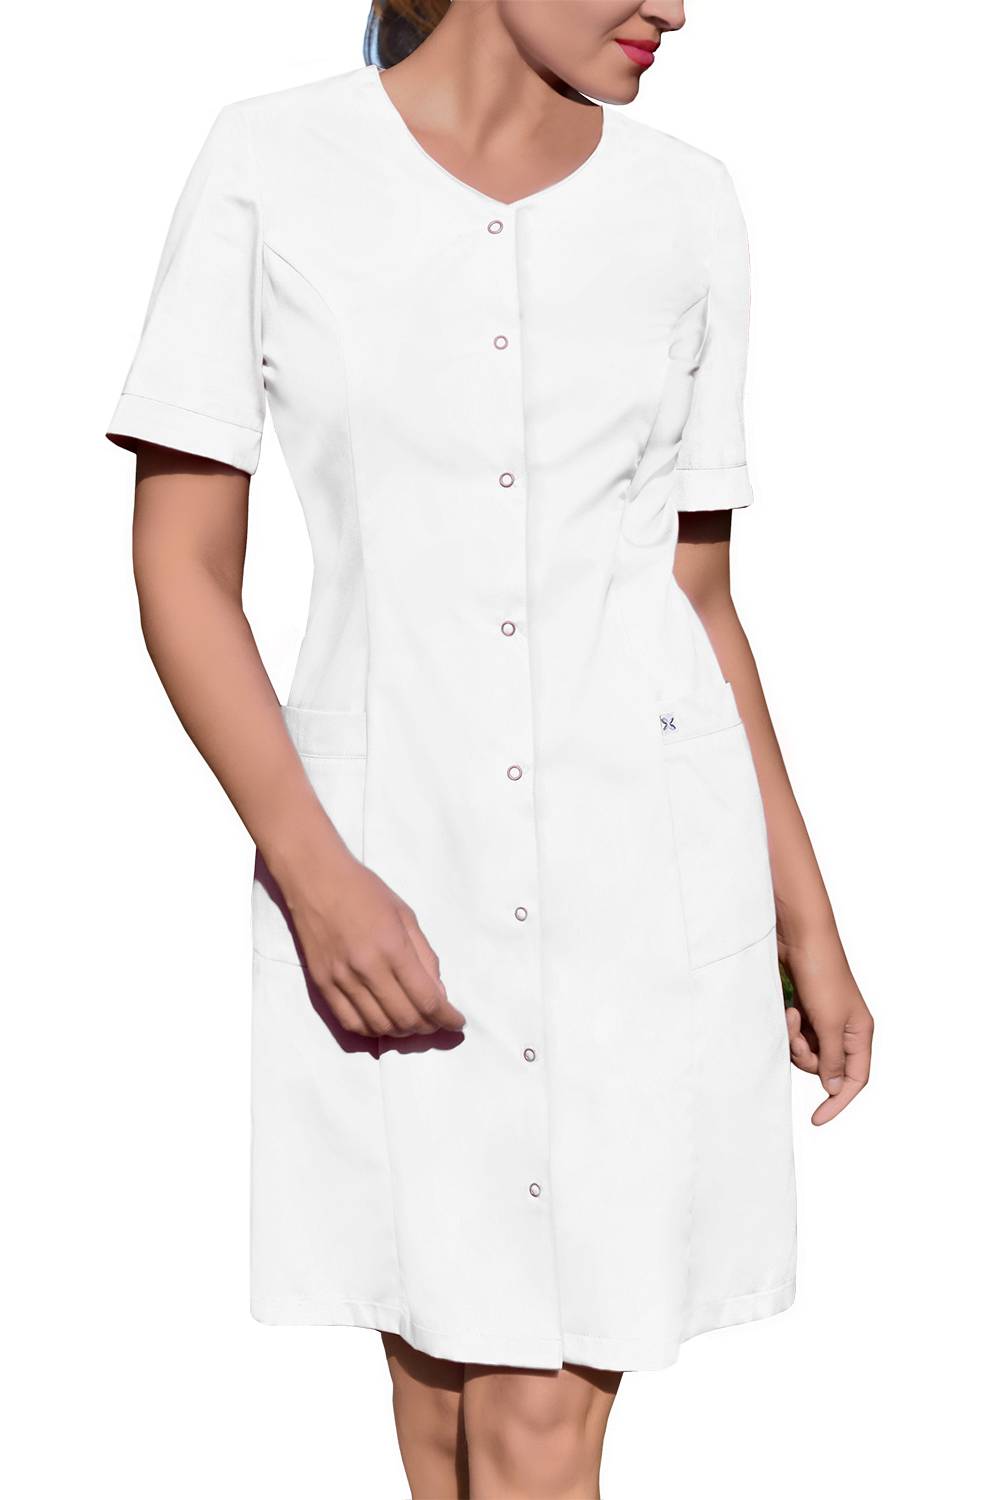 Fartuch medyczny biały / sukienka - zapinanie na napy (FC6-B)